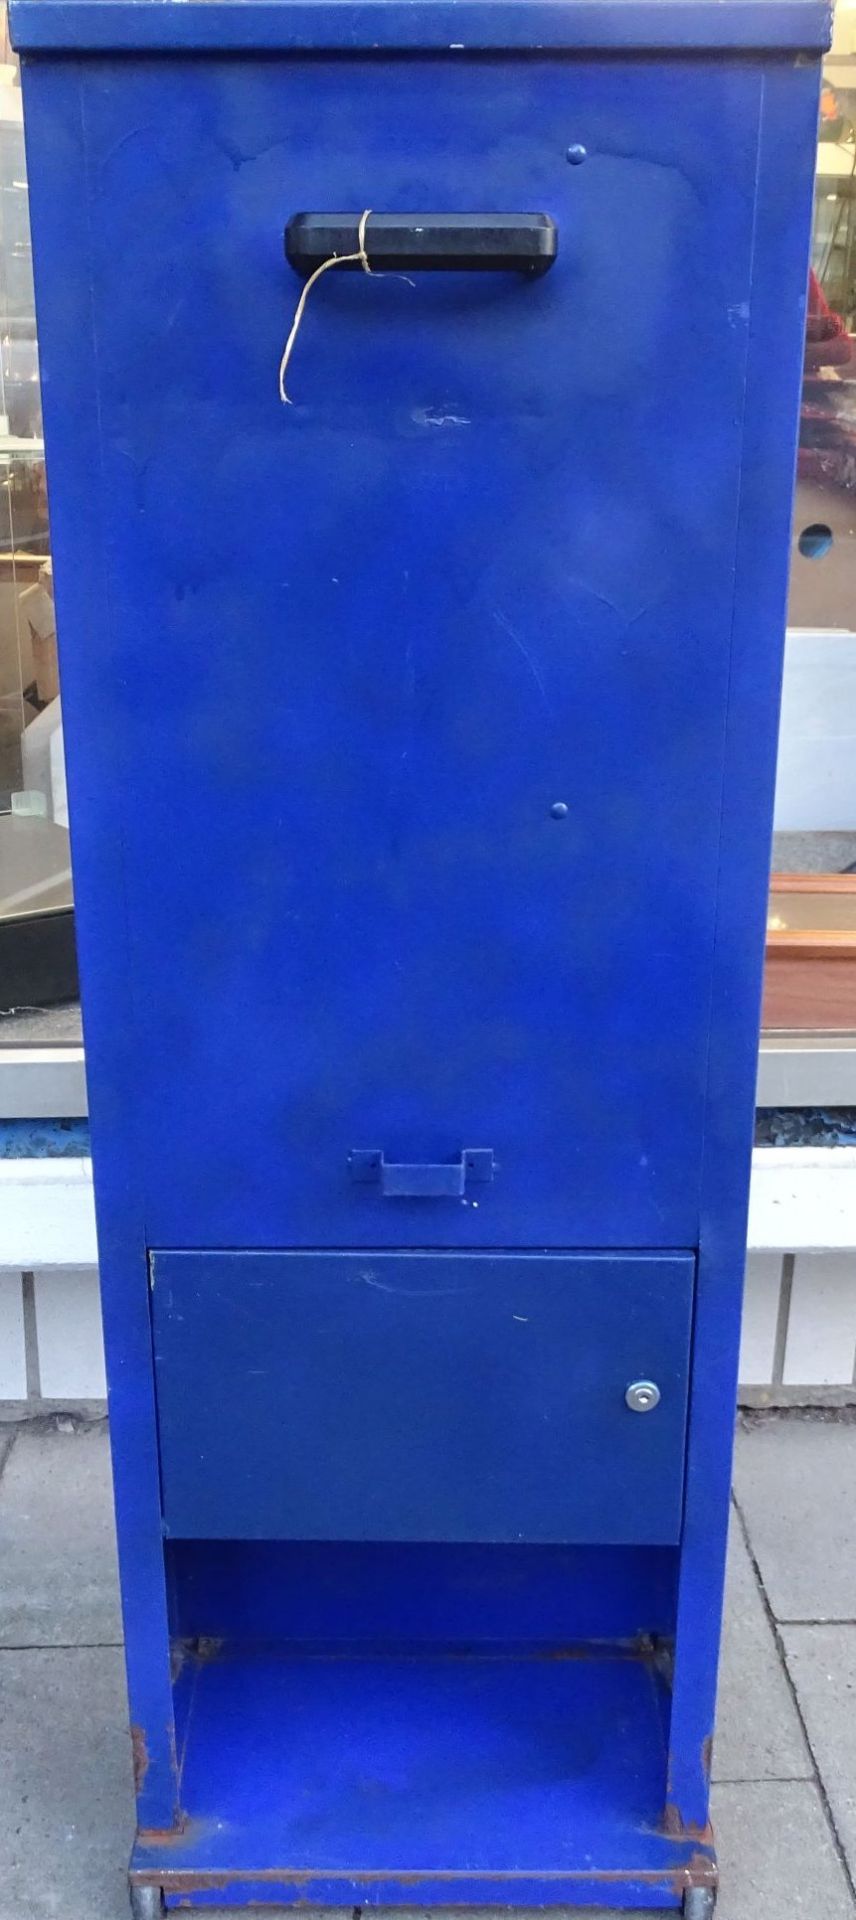 gr. Flummy-Automat, Metall, Einwurf 50 Cent, Schlüssel fehlen, H-120 cm, 22x40 cm, Marktautomat - Bild 5 aus 7